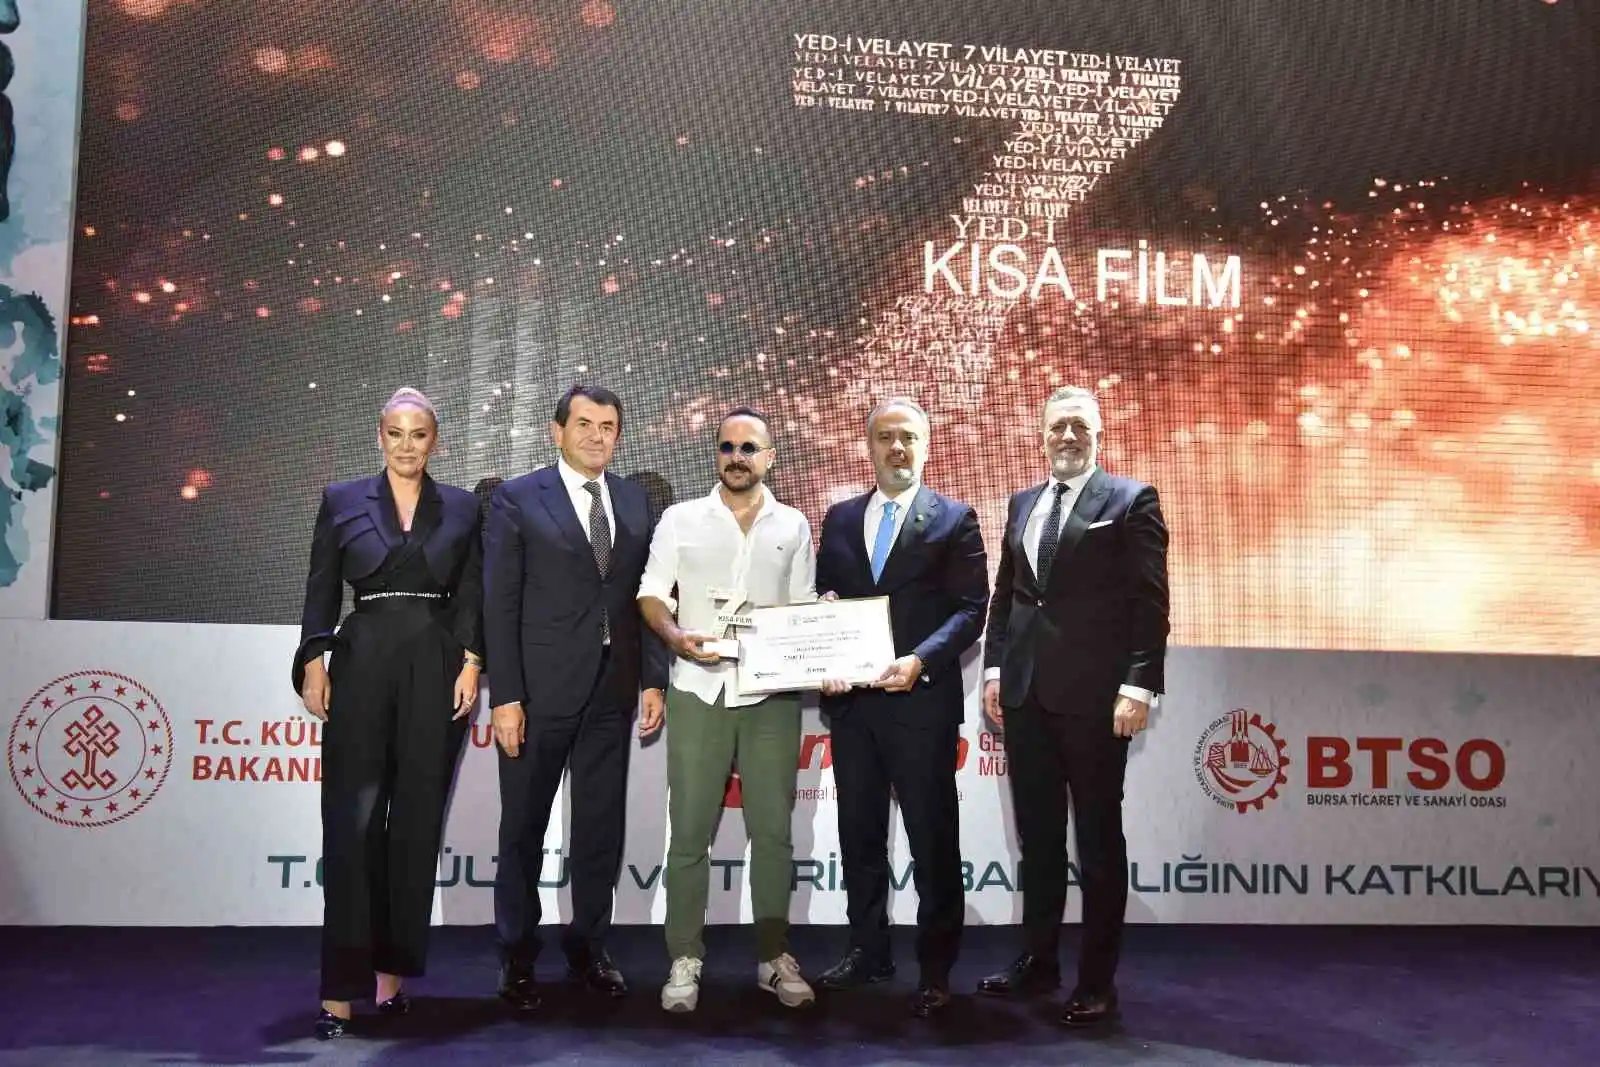 BTSO, Yed-i Velayet 7 Vilayet Kısa Film Festivaline ev sahipliği yaptı
